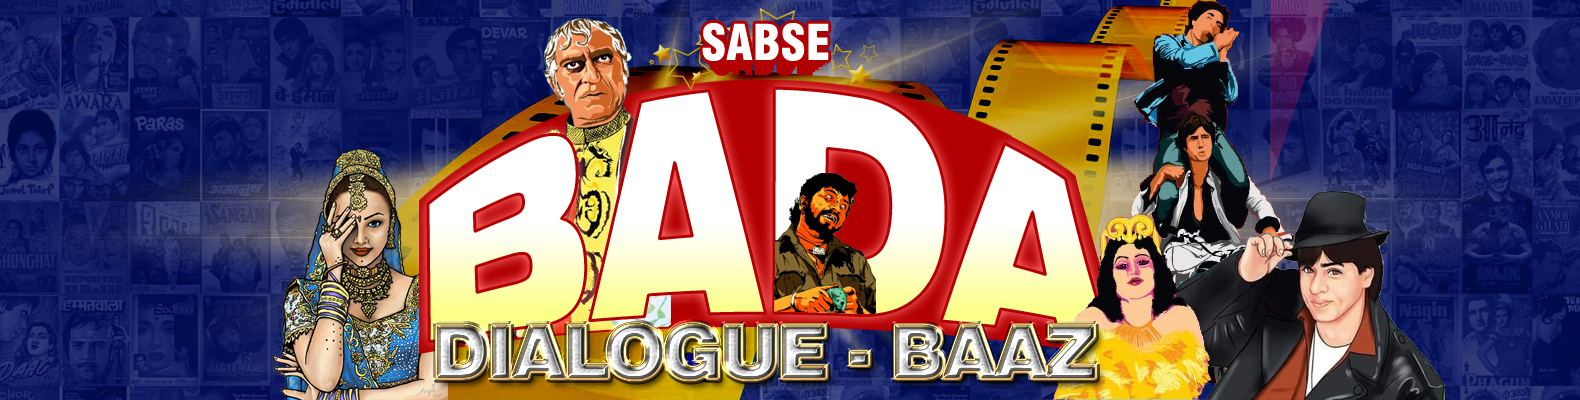 Sabse Bada Dialogue-baaz